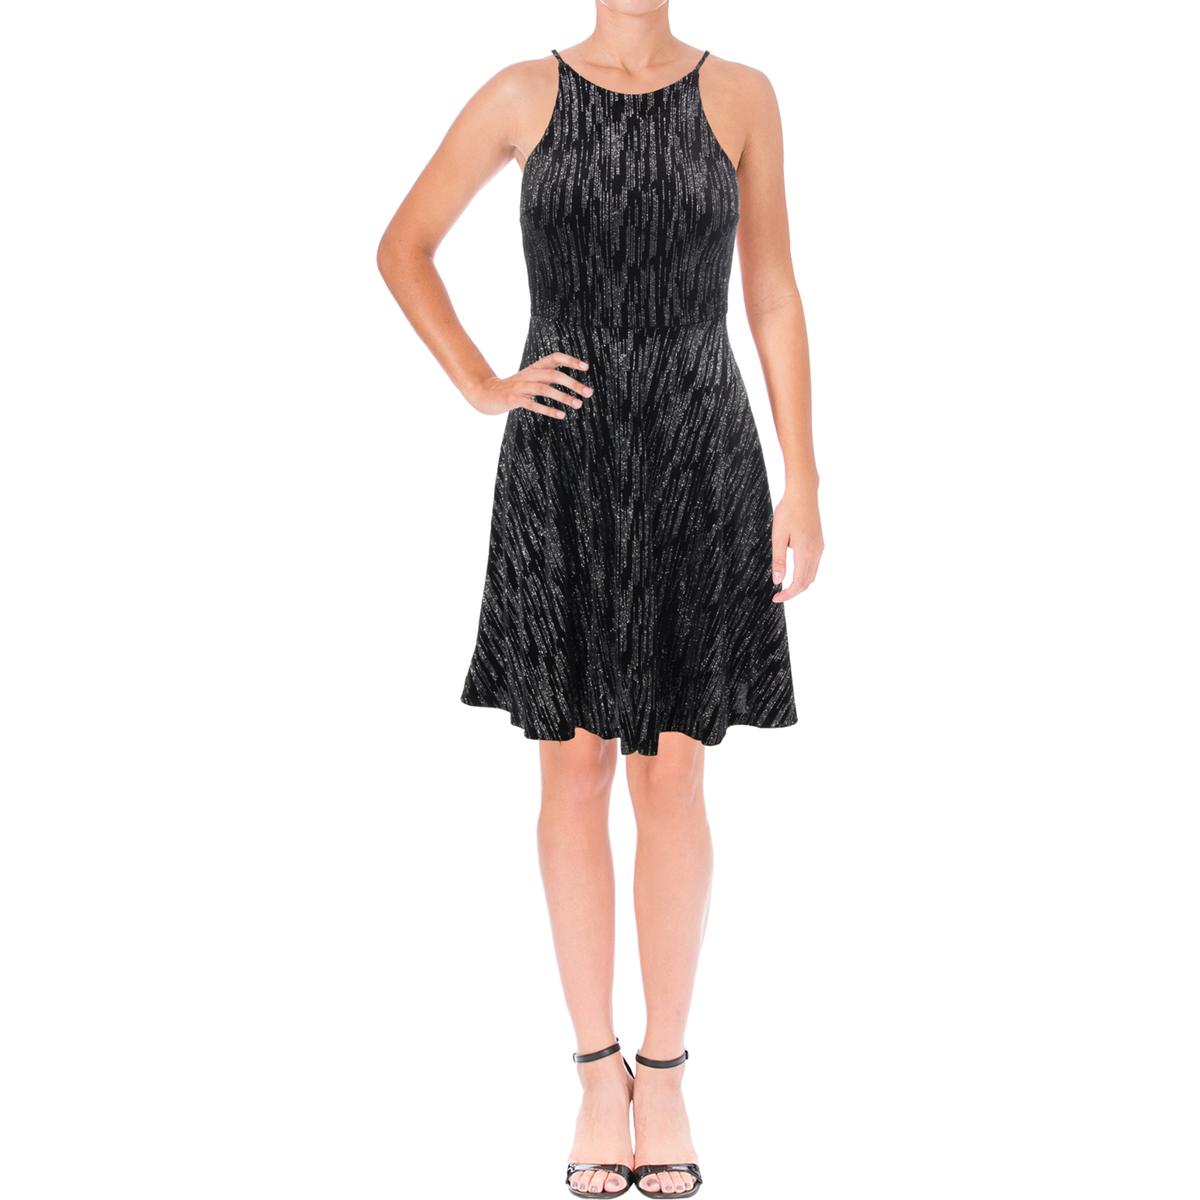 Aqua Womens Black Velvet Glitter Party Cocktail Dress M BHFO 9513 | eBay